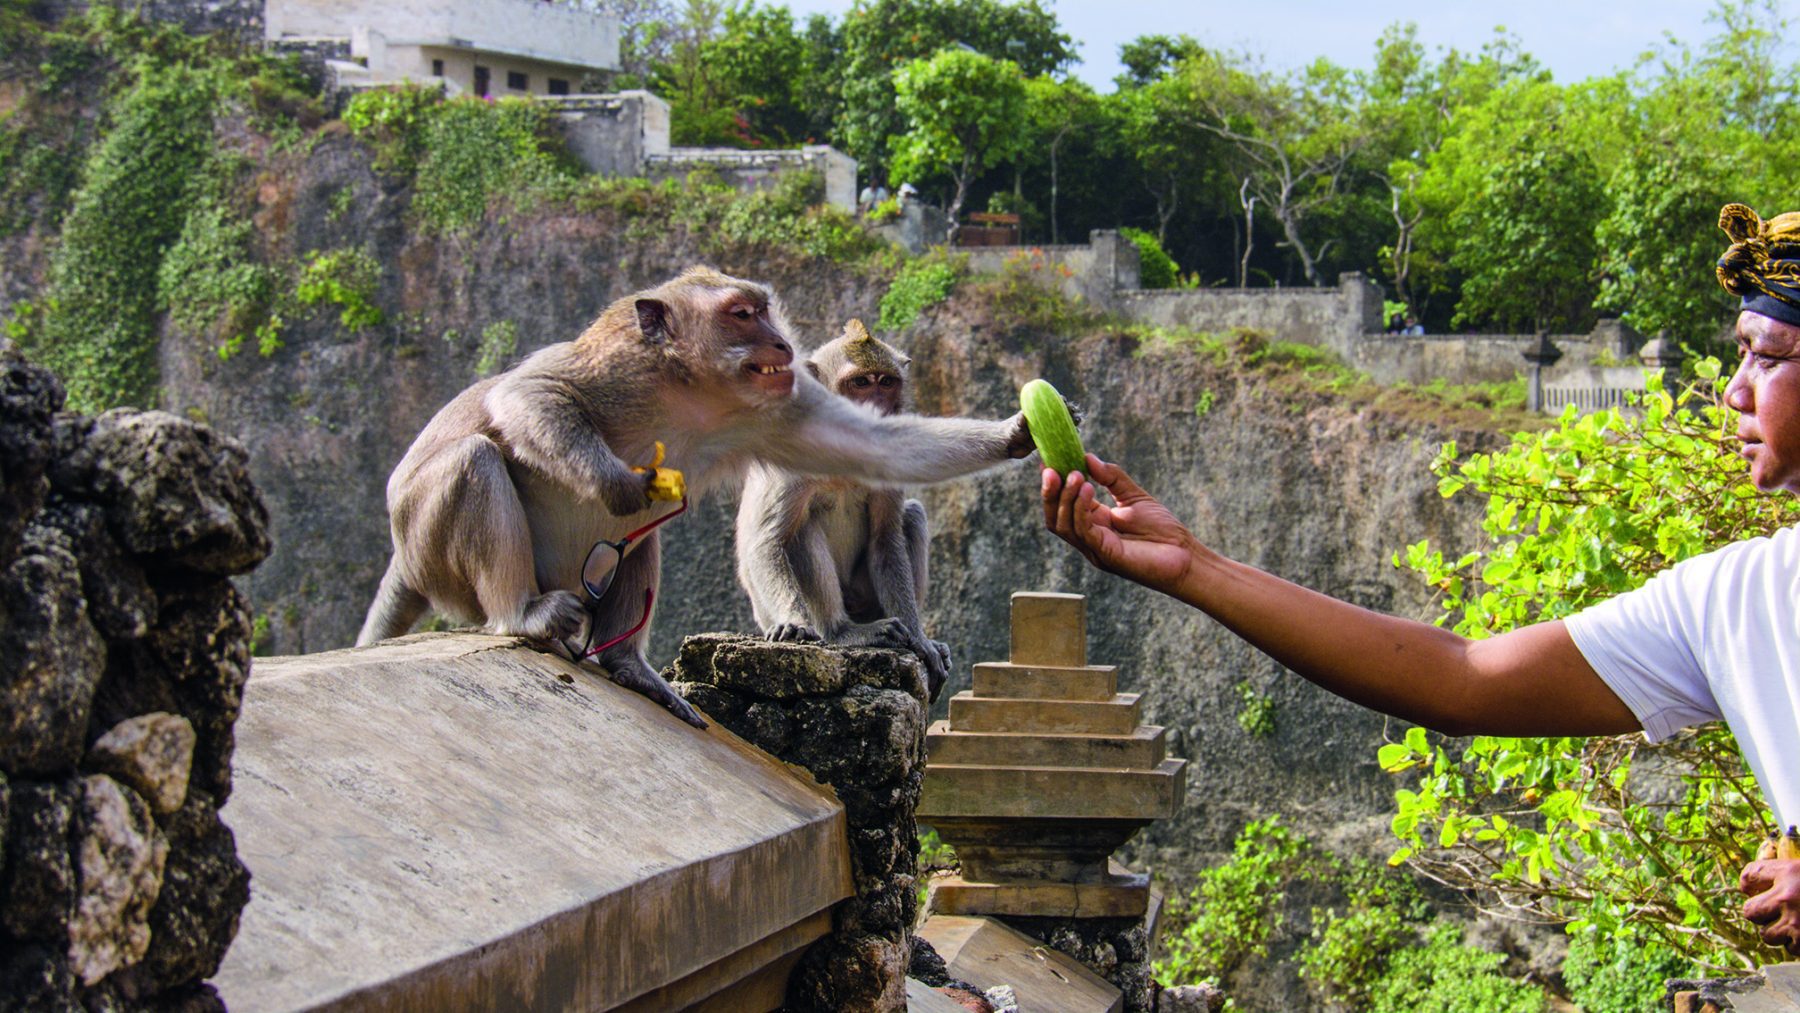 Een langstaartmakaak ontvangt voedsel van een van de tempelmedewerkers in Uluwatu tempt. Dit is een poging om voedsel te ruilen voor een voorwerp dat de makaak heeft gestolen van een toerist in Bali, Indonesië.